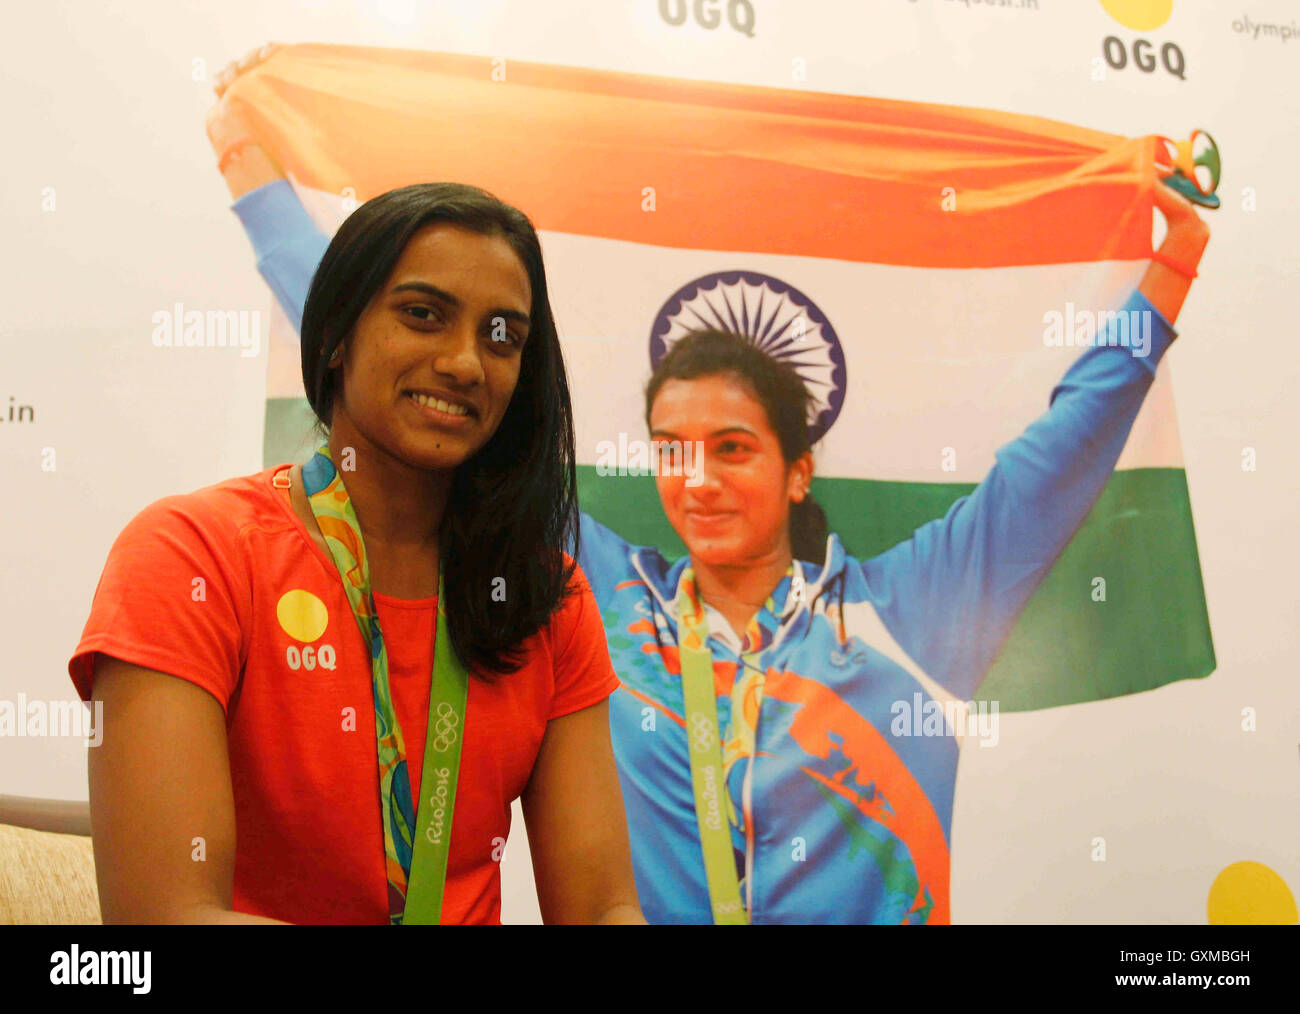 Indischer Badmintonspieler und Silbermedaillengewinnerin der Olympischen Spiele in Rio P V Sindhu während der Begeisterungsfunktion OGQ Bombay Mumbai Maharashtra India Stockfoto